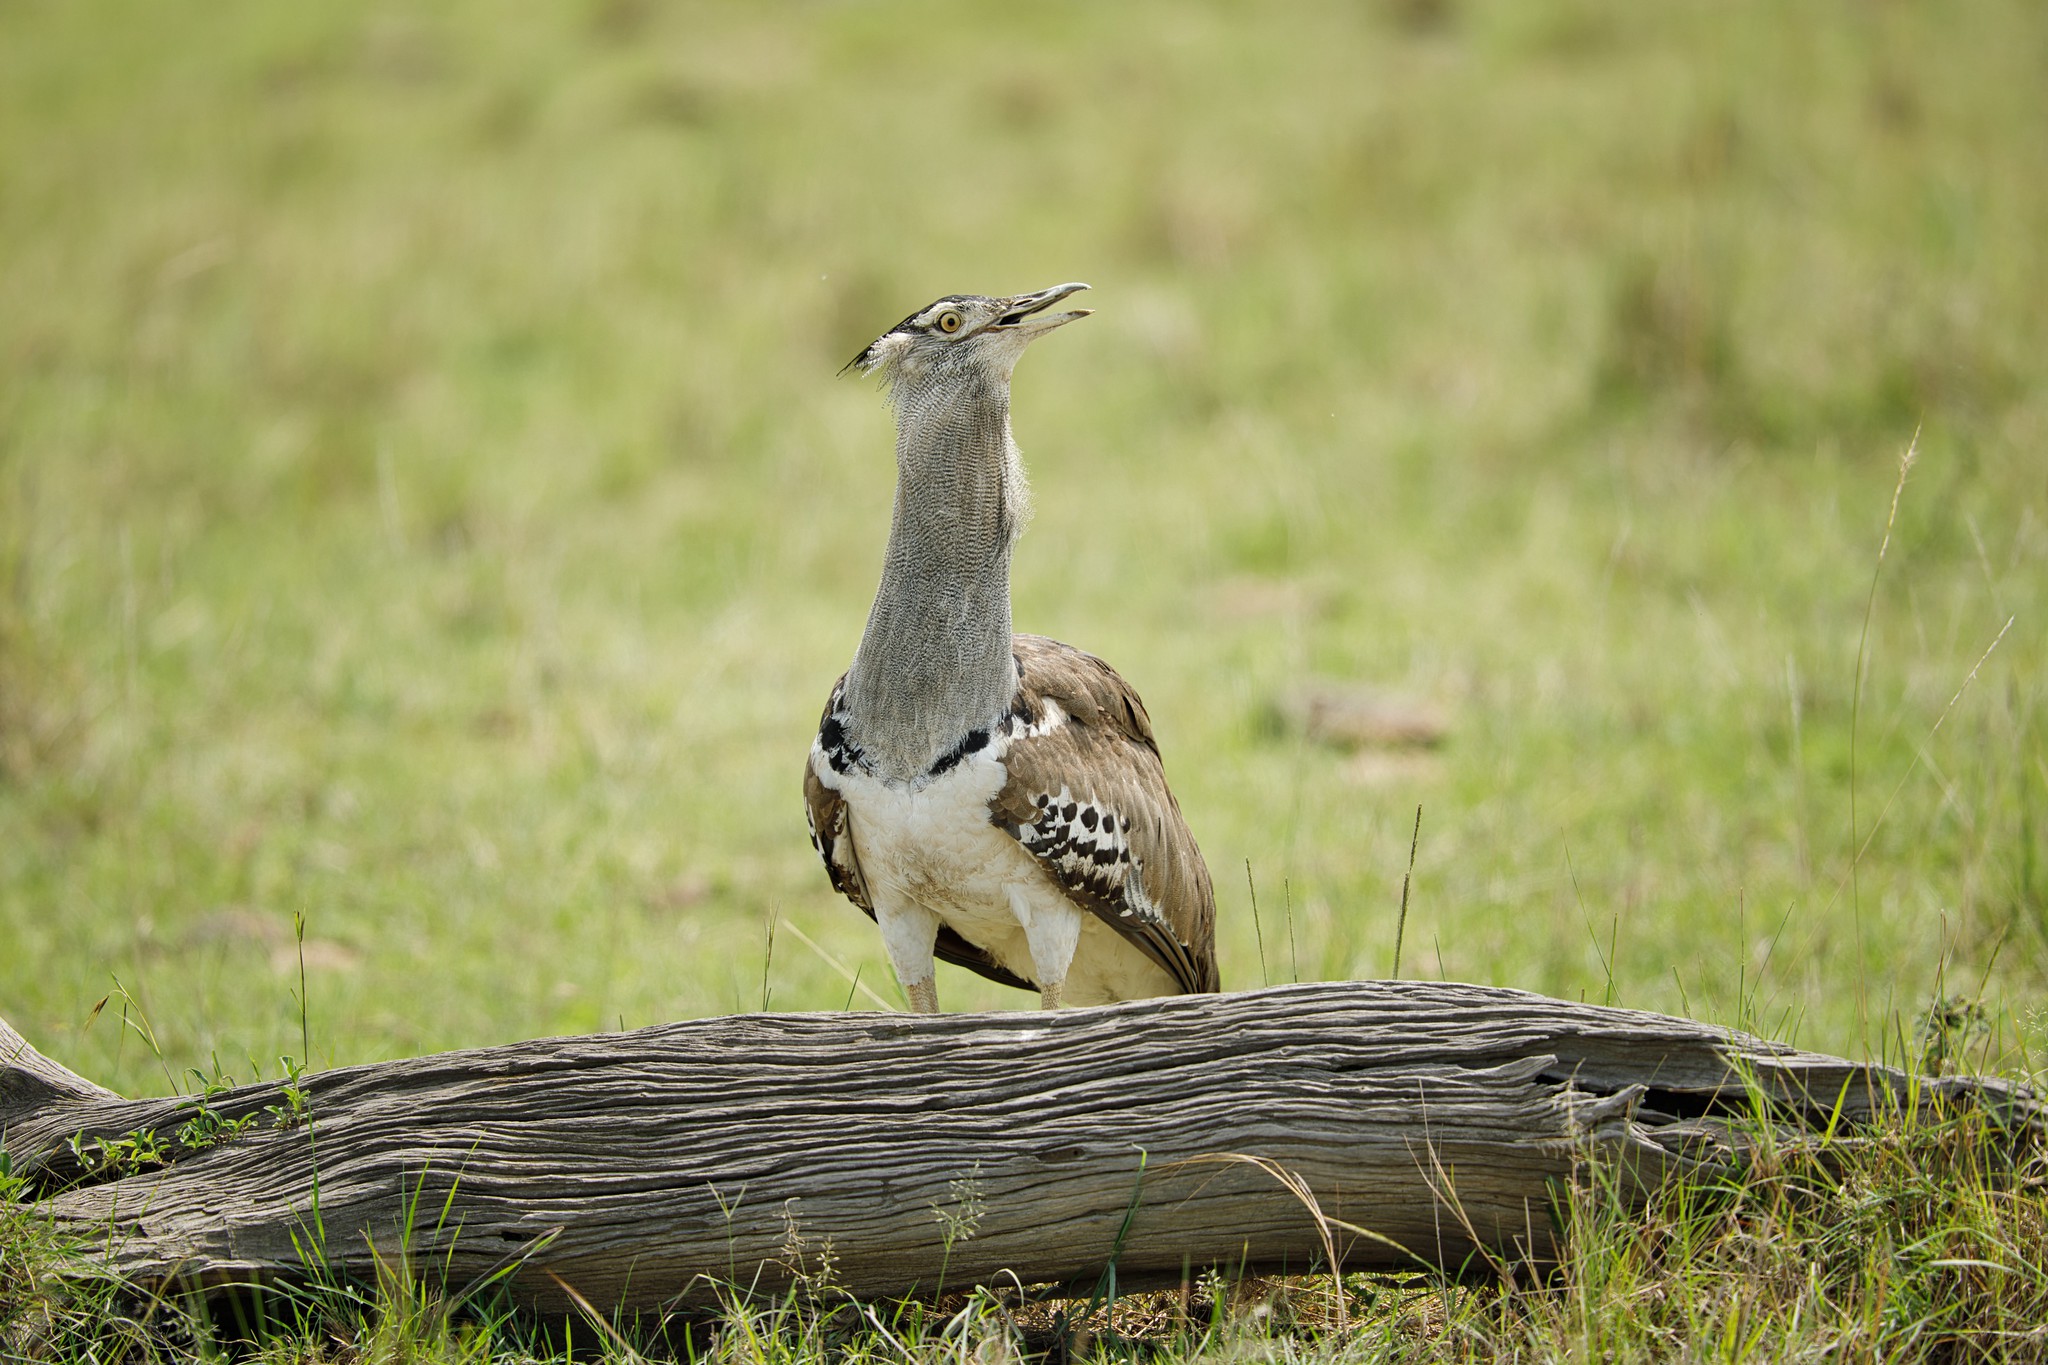 Kori bustard - Masai Mara